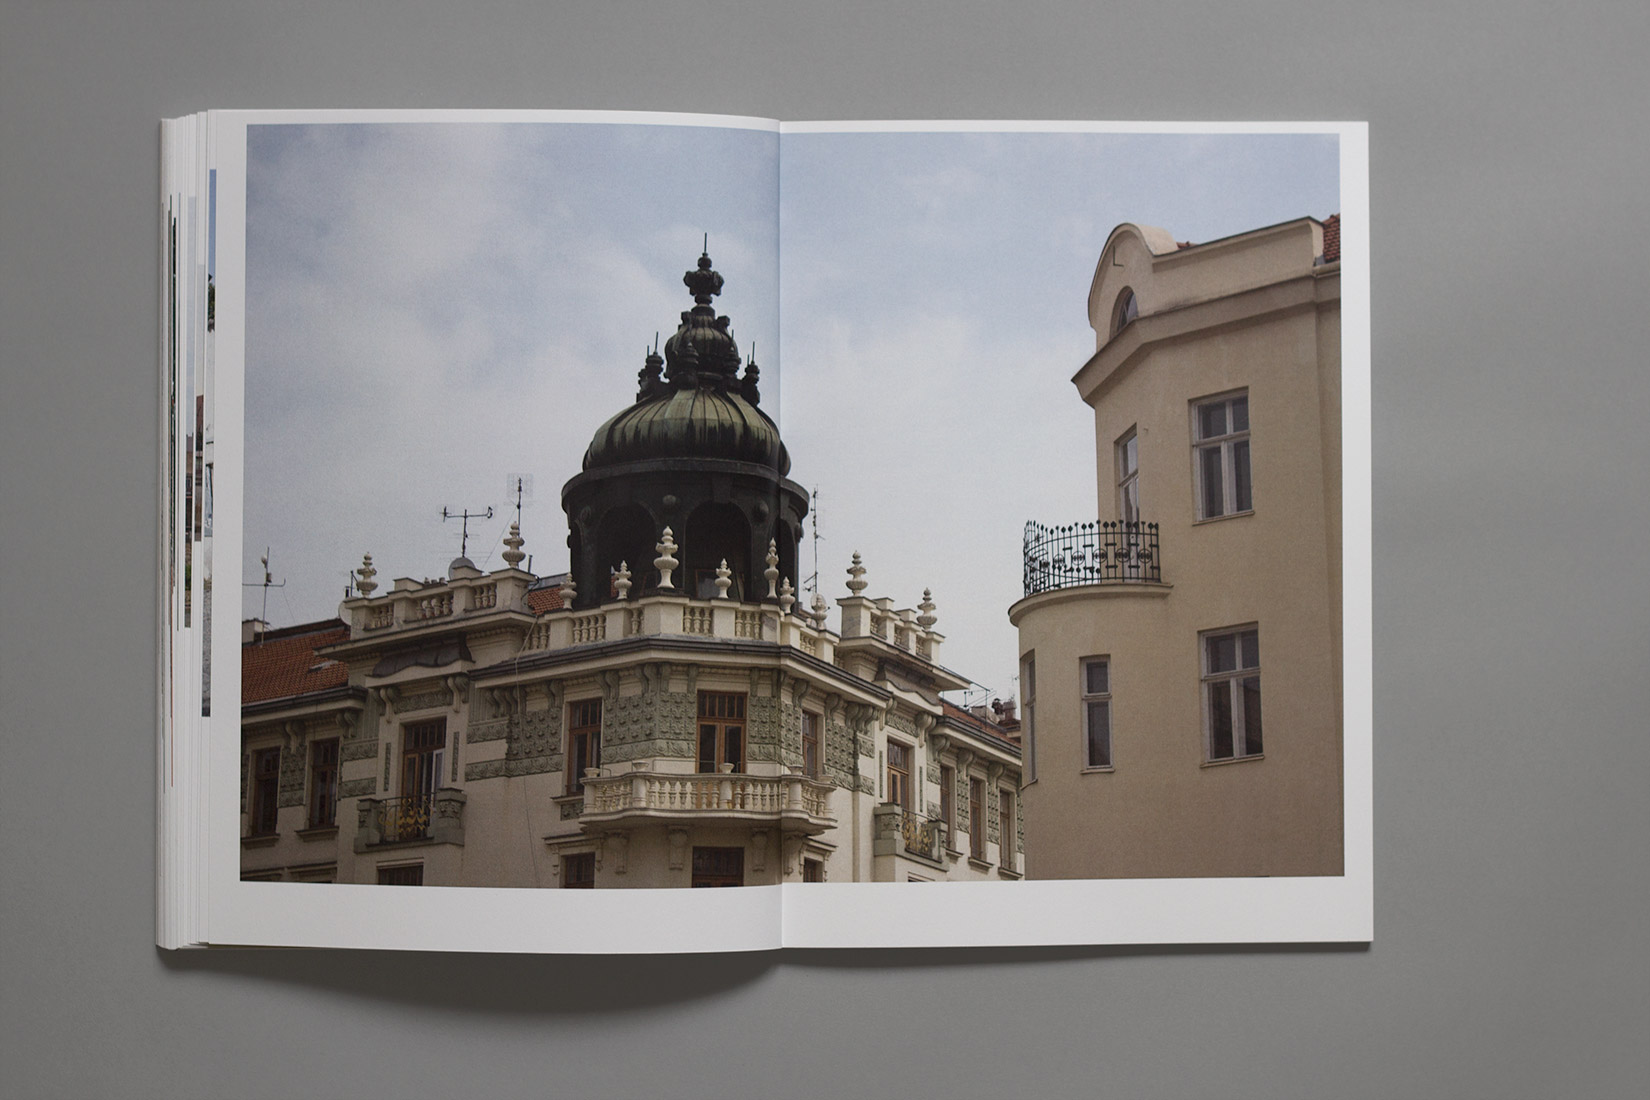 Voyage d'études, livre, Brno, architecture, balcon